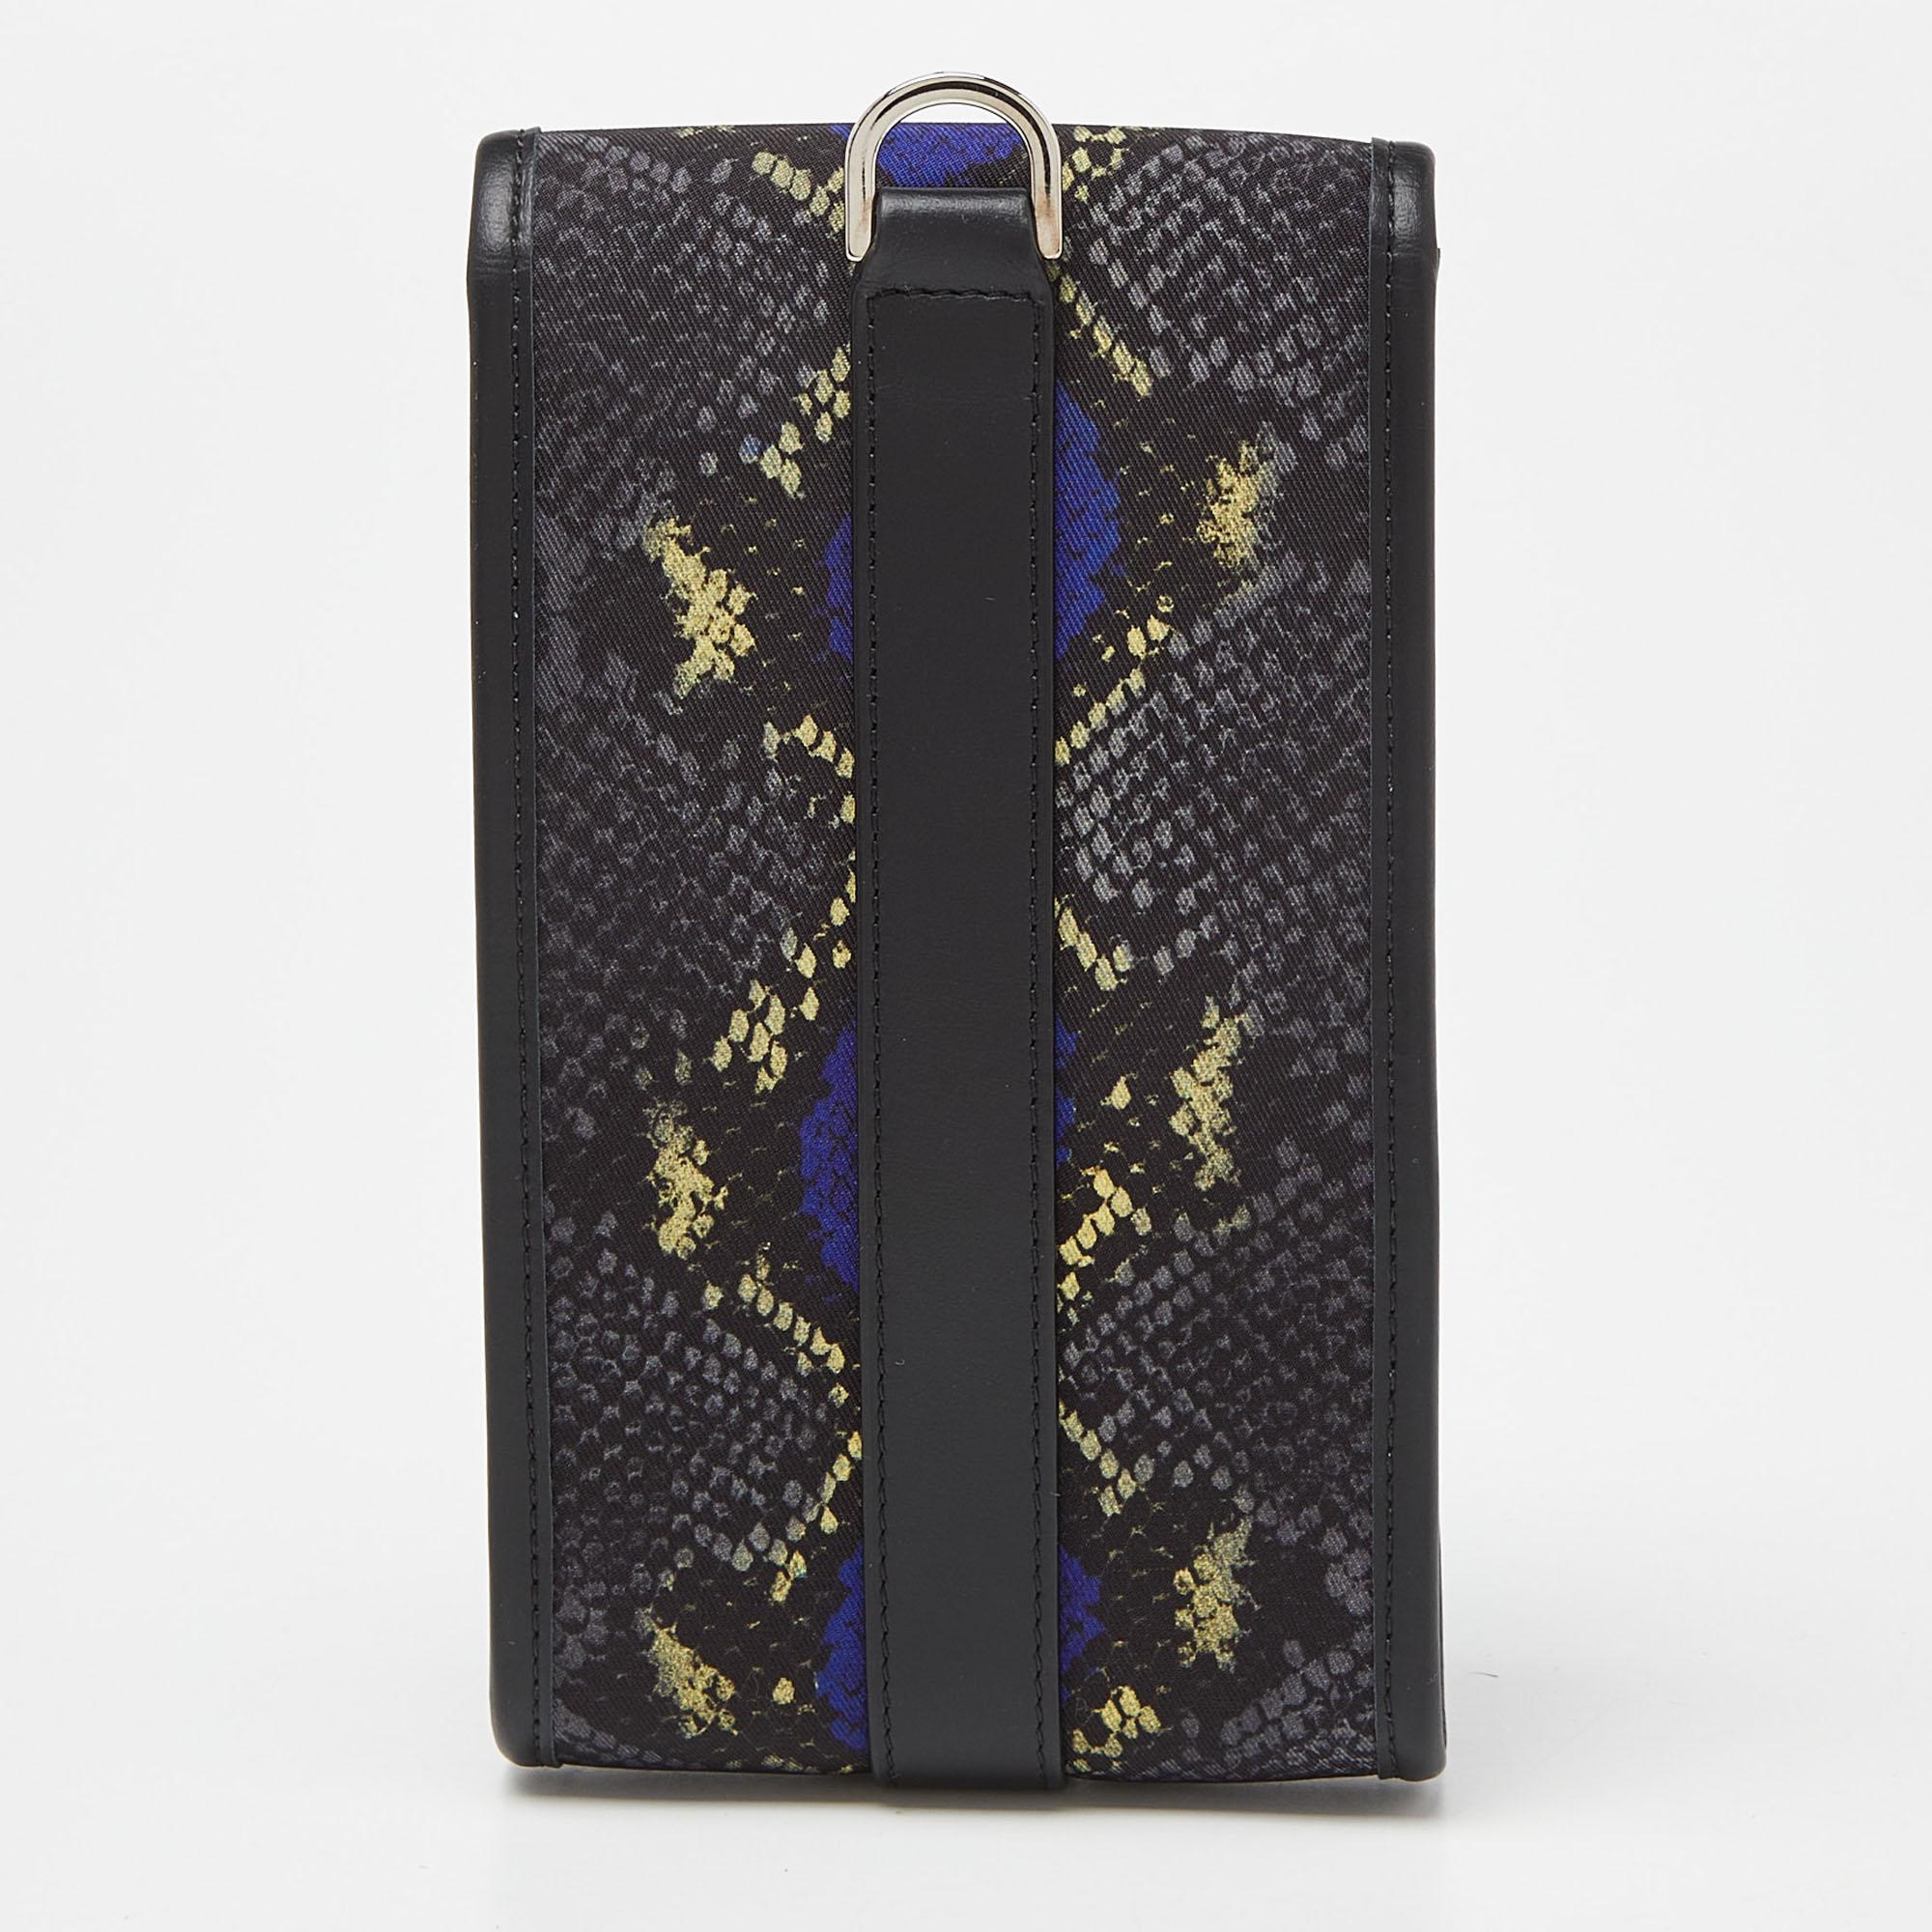 La pochette de l'étui de téléphone Versace vous permet d'élever votre équipement technologique. Confectionné en nylon et cuir luxueux, il respire l'opulence. Les motifs vibrants inspirés de la peau de serpent ajoutent une touche d'exotisme. Conçu à